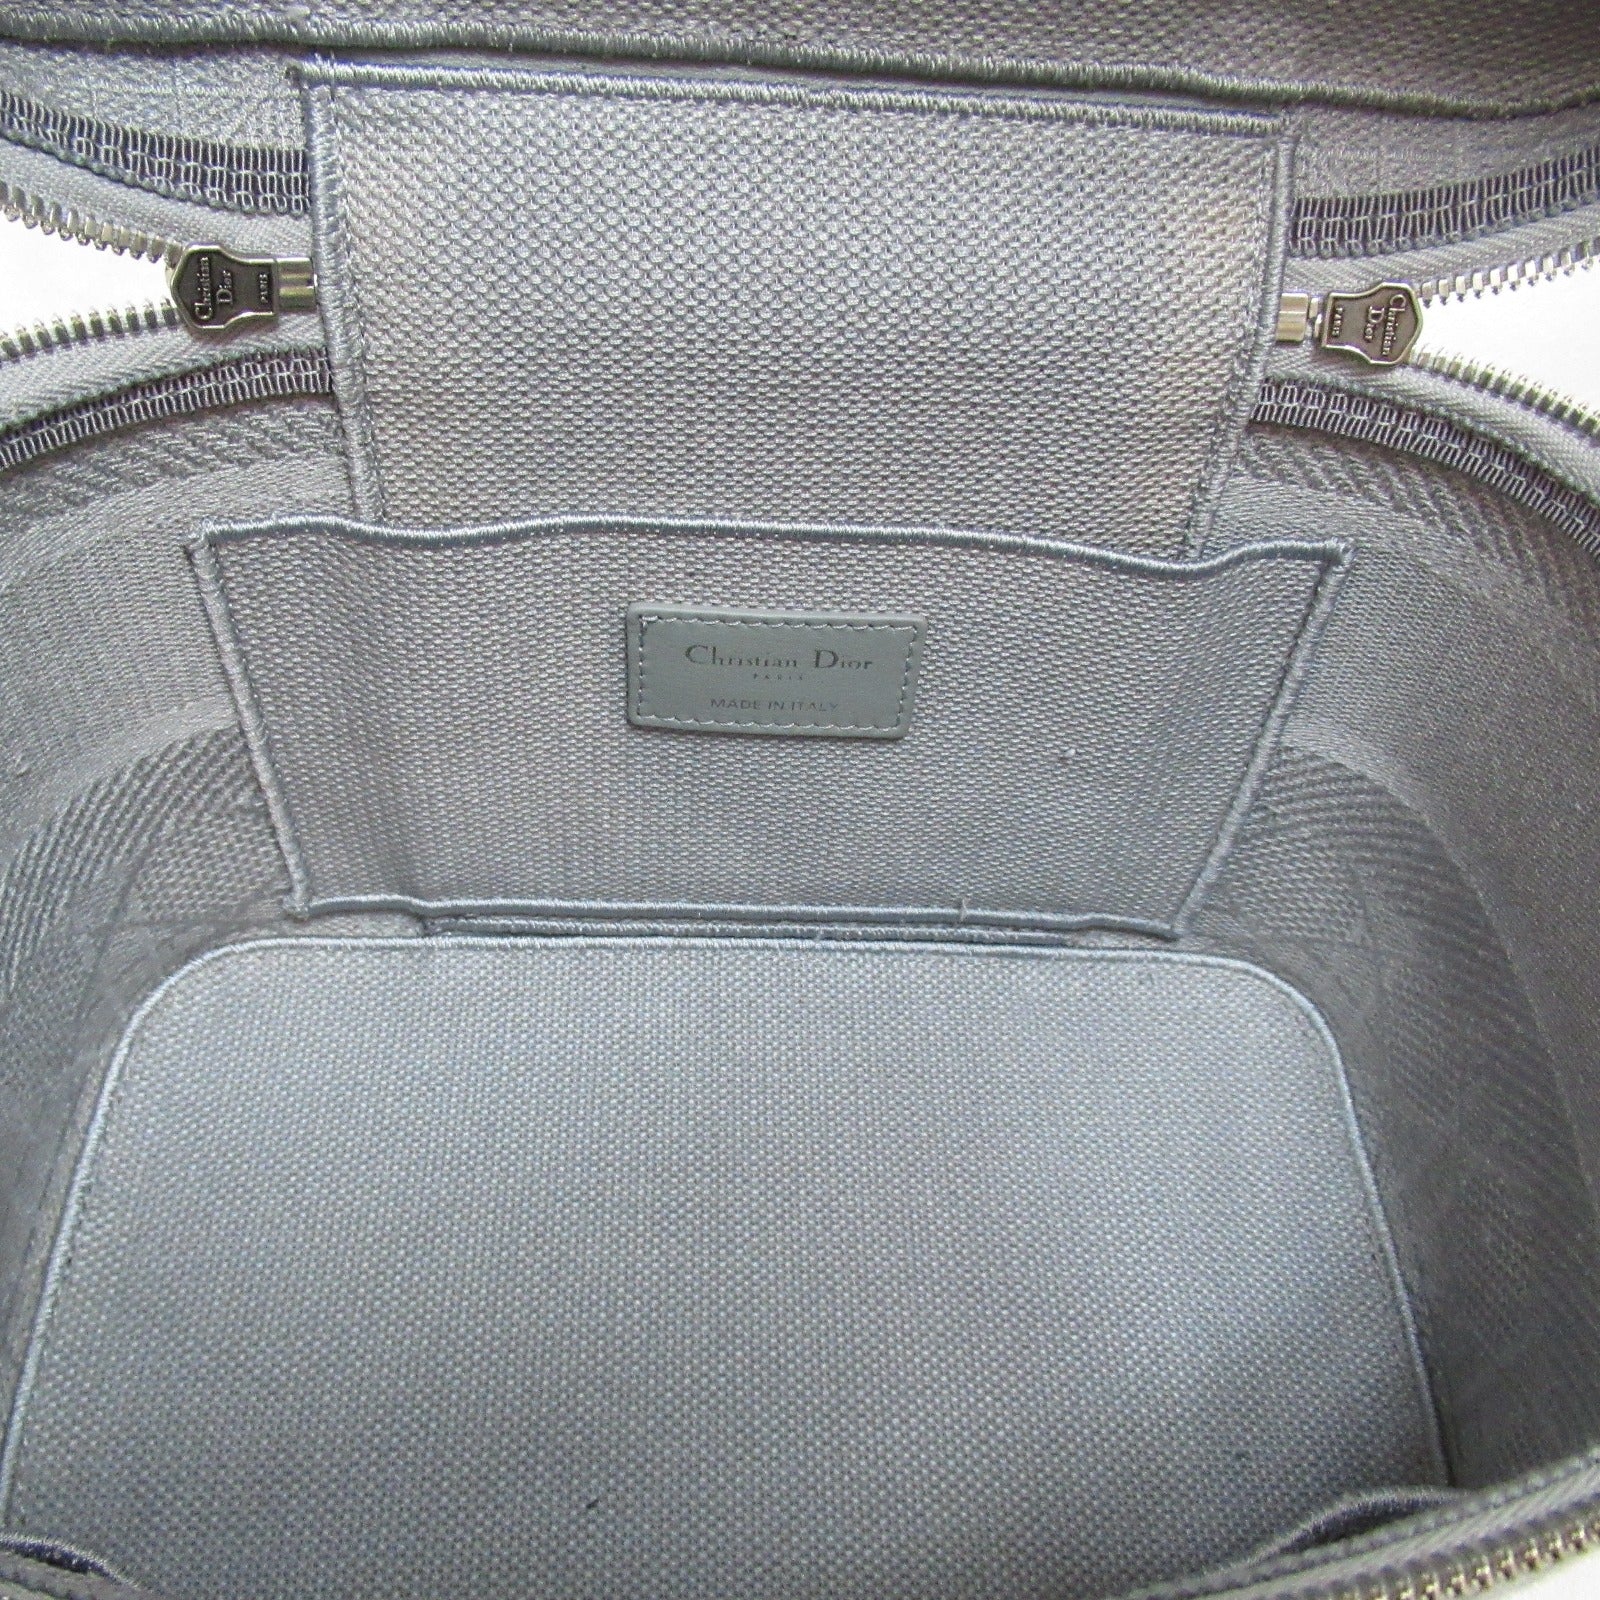 Dior Dior Handbag Handbag Handbag Handbags Handbags Handbags Handbags Handbags Handbags Handbags Handbags Handbags Handbags